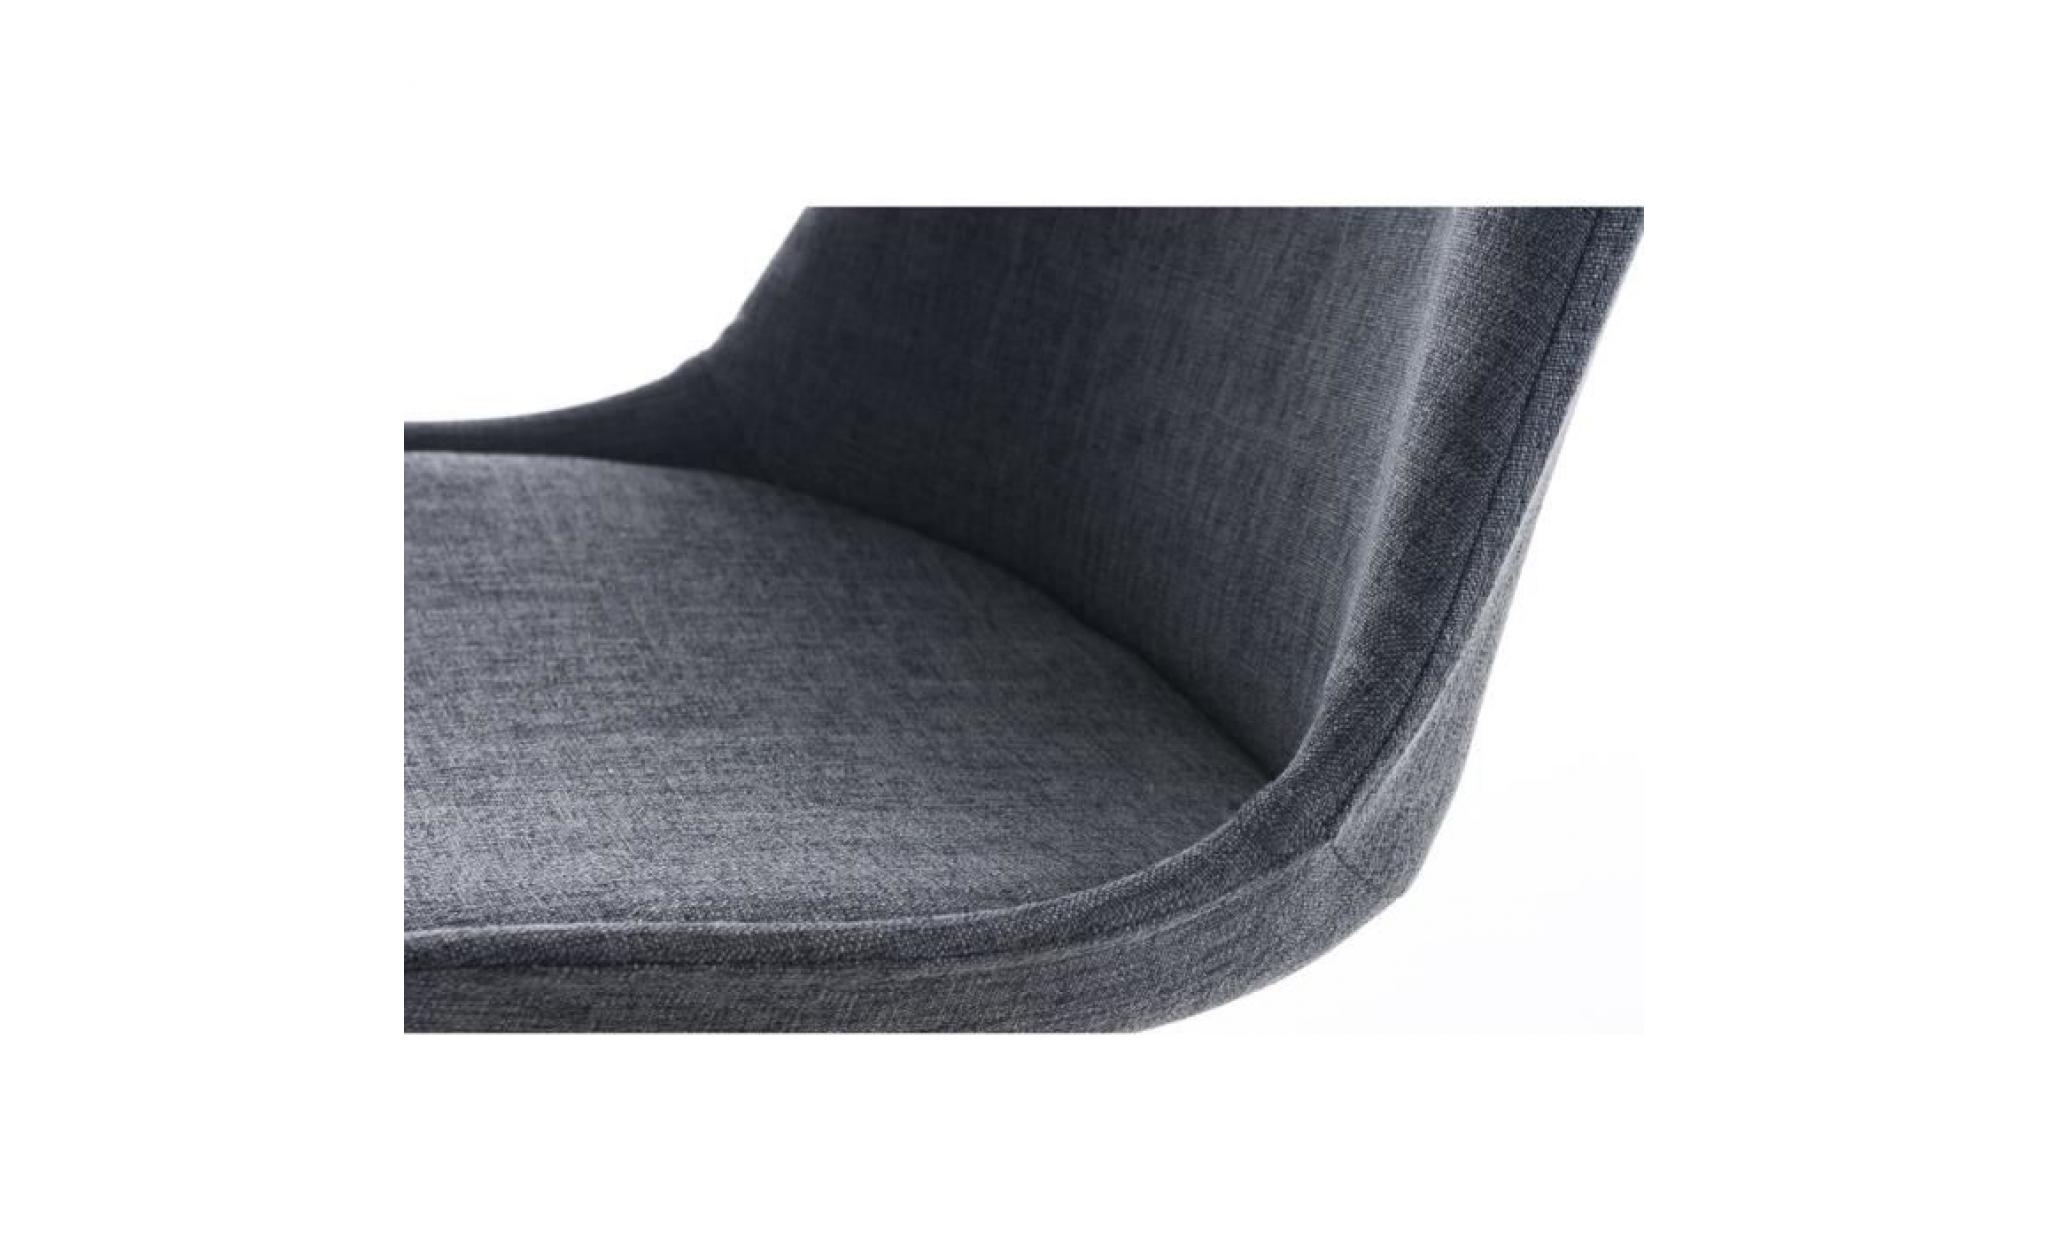 clp chaise retro pegleg piétement en bois couleur noix, revêtement en tissu, chaise de visiteur design, couleurs au choix pas cher